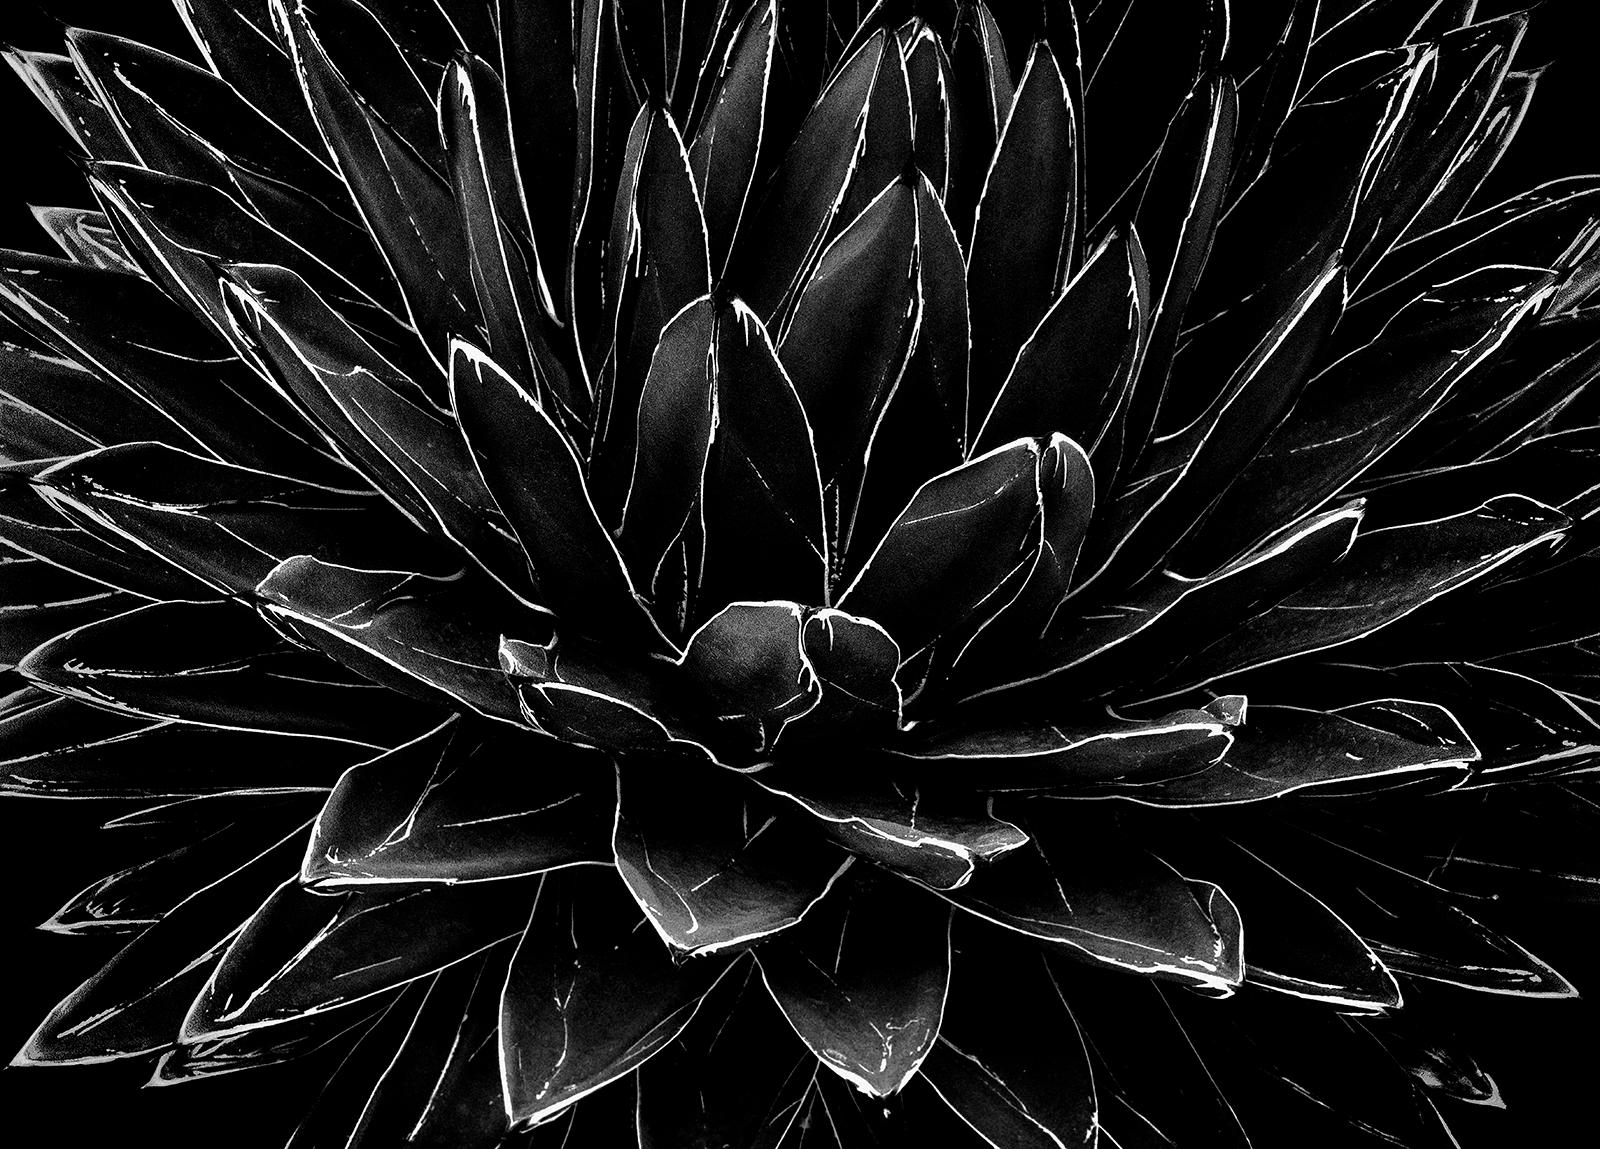 Cactus - Impression de nature morte en édition limitée signée, noir et blanc, contemporaine